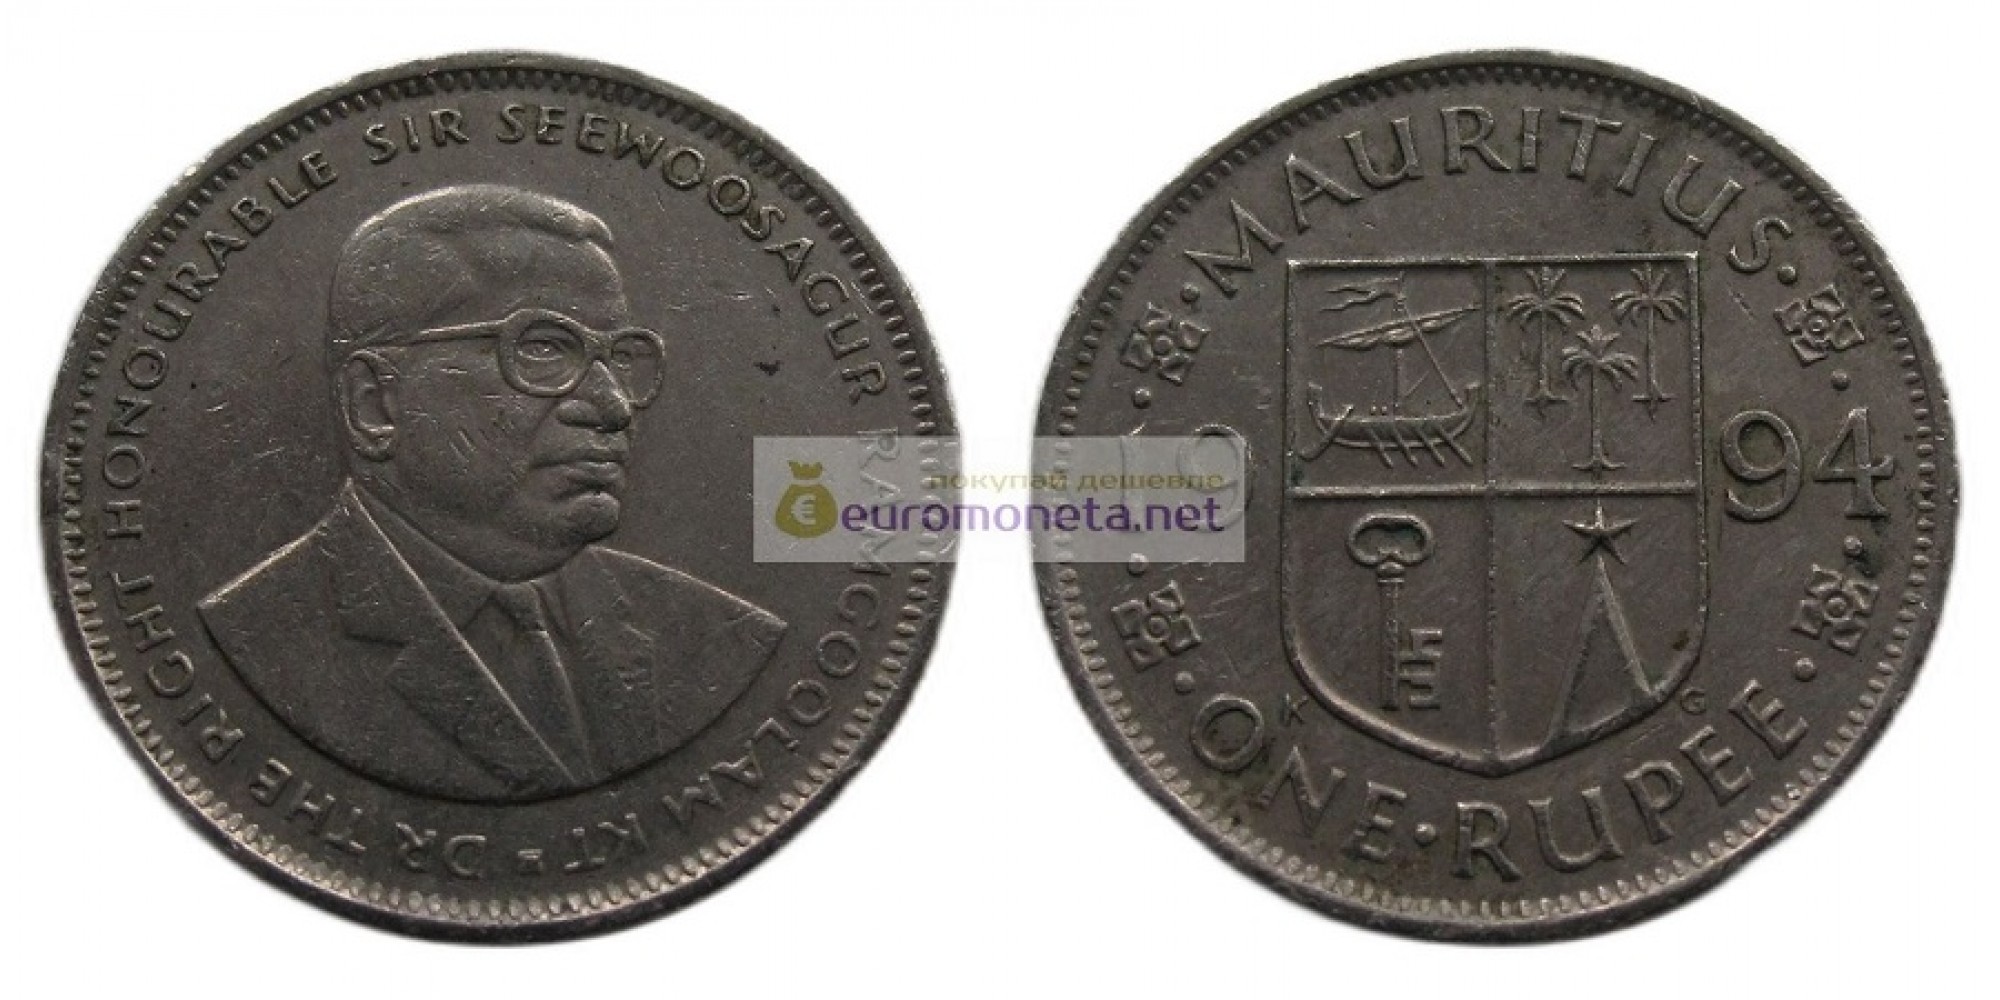 Республика Маврикий 1 рупия 1994 год. Сивусагур Рамгулам